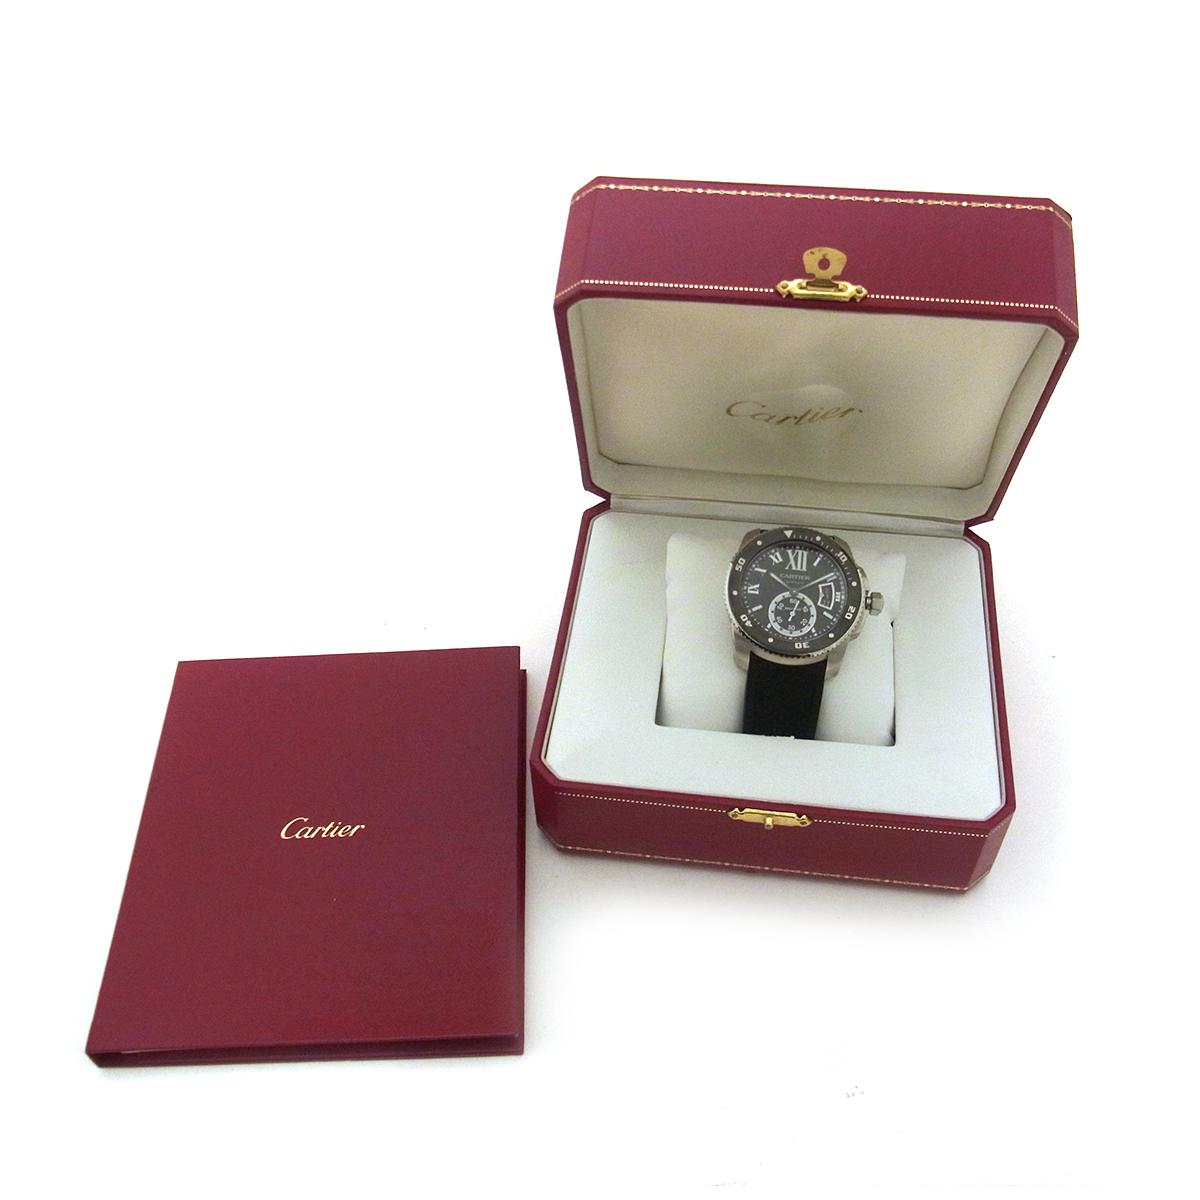 カルティエ（Cartier）カリブル ドゥ カルティエダイバー W7100056 メンズ腕時計 黒文字盤